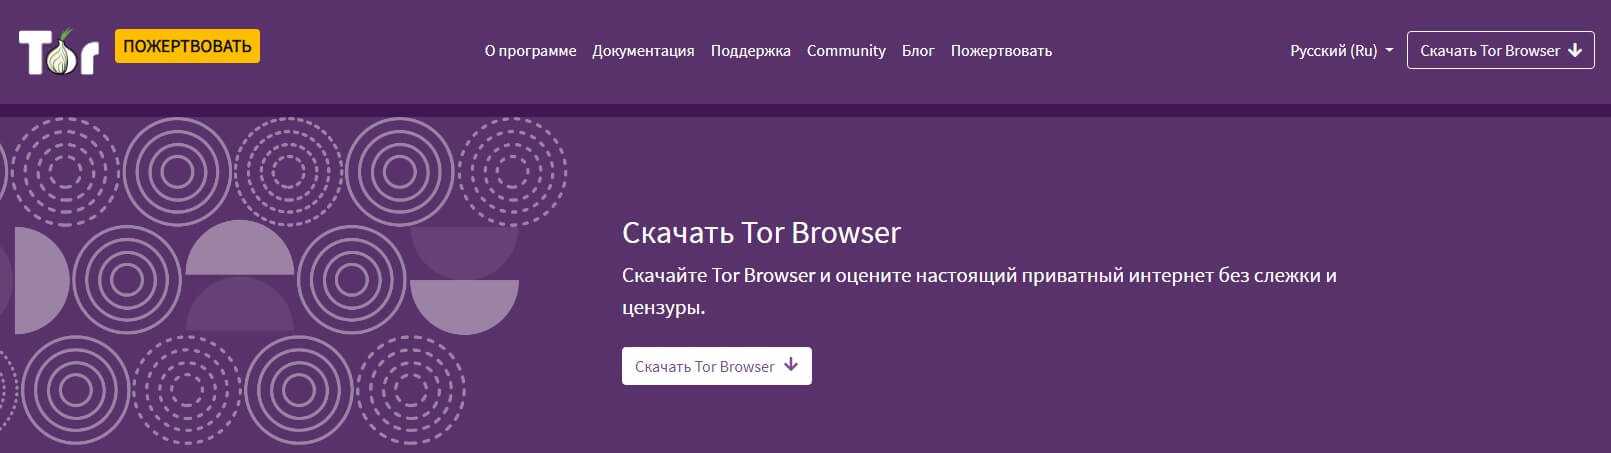 Даркнет зайти на сайт тор браузер с официального сайта на русском